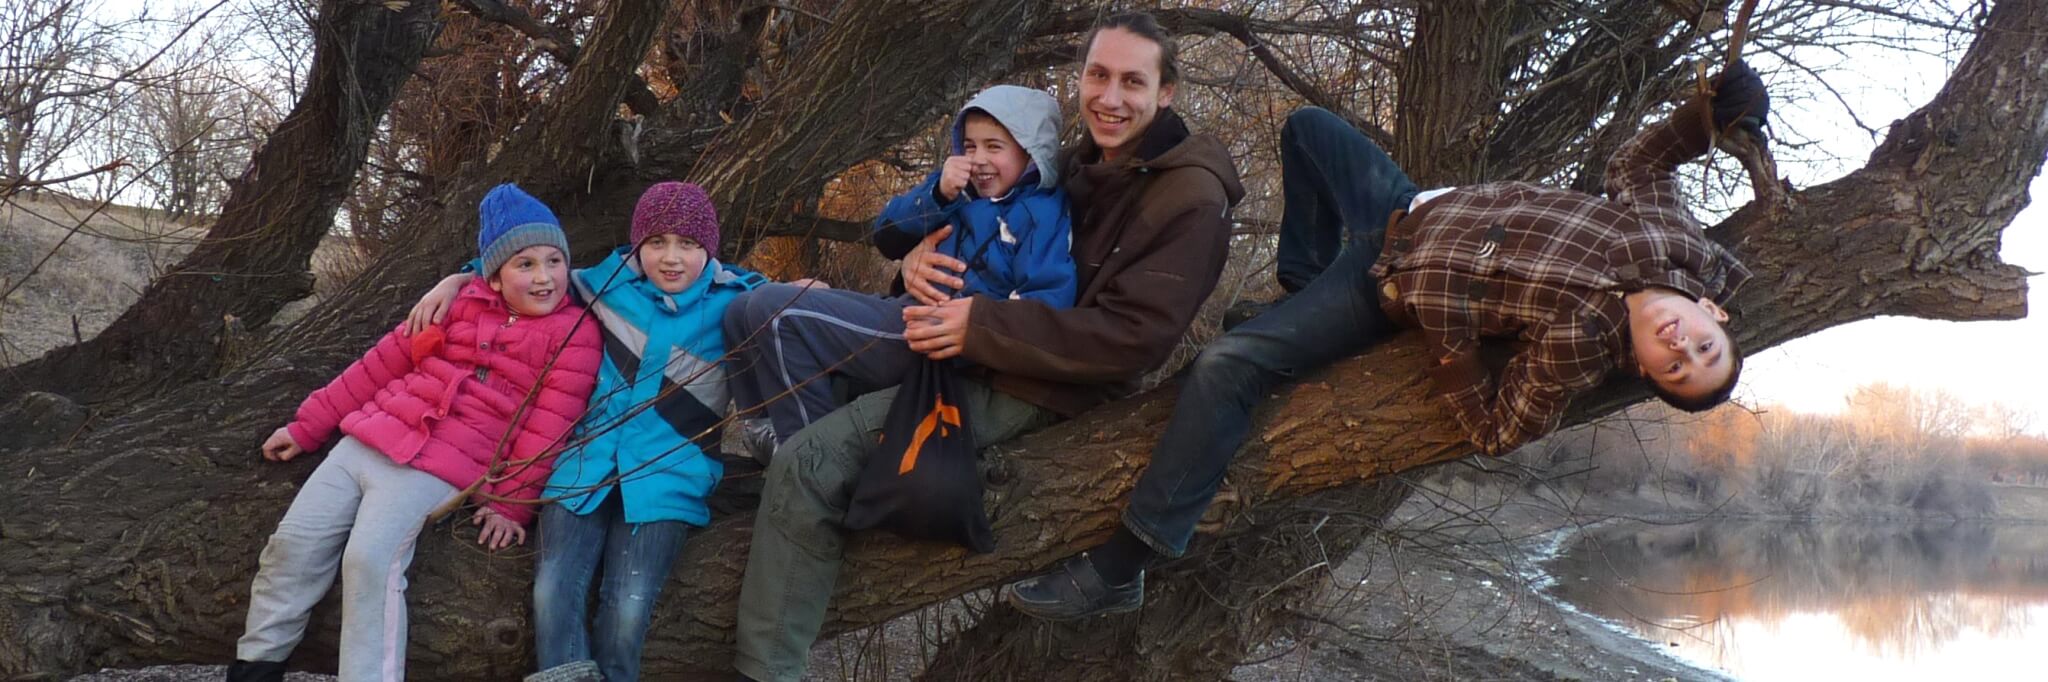 Bild: Freiwilliger sitzt mit Kindern auf einem Baum